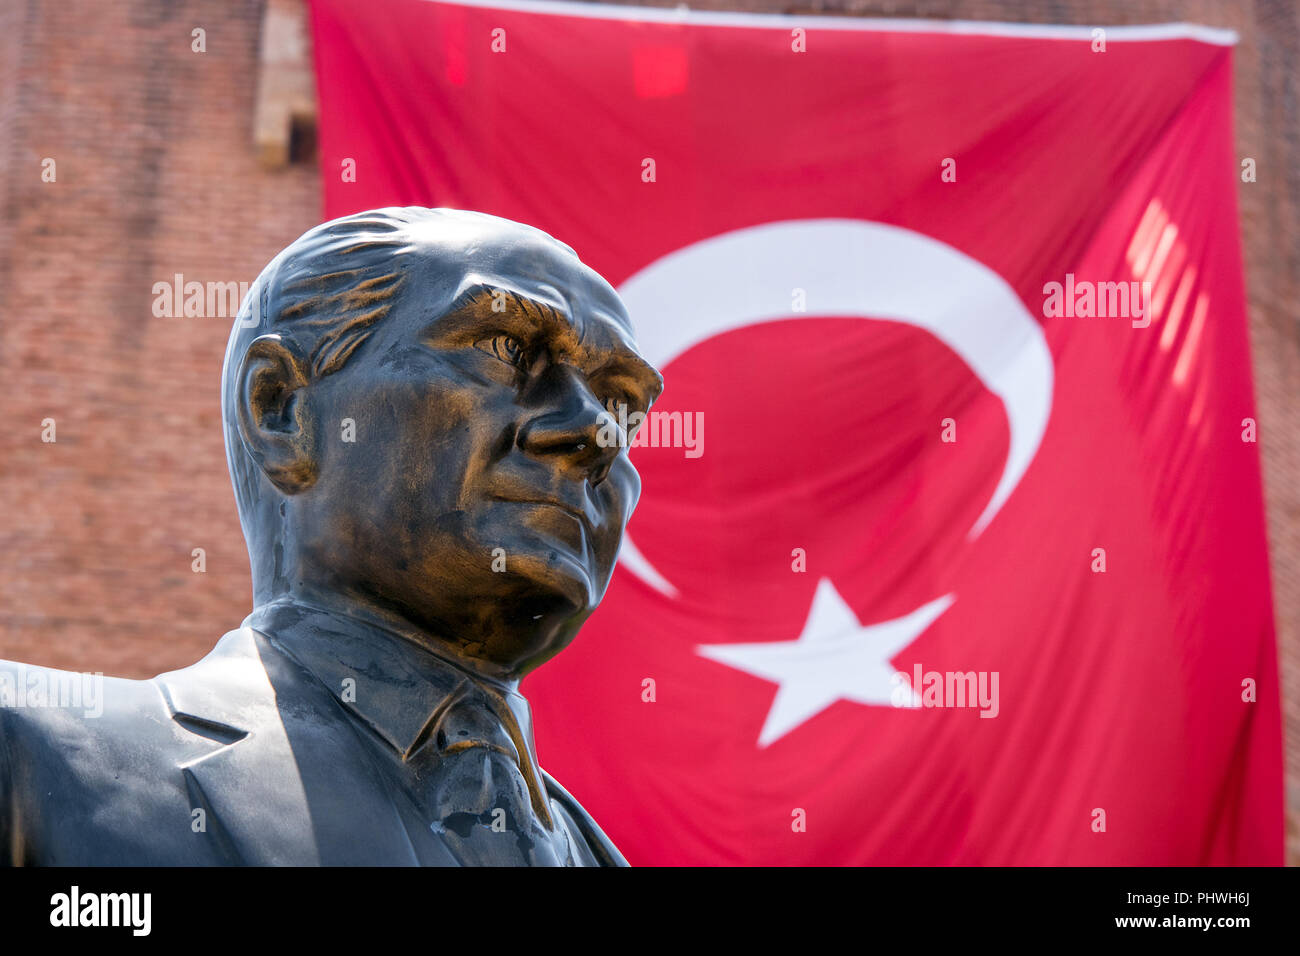 Un gros plan d'une fière statue de bronze de Mustafa Kemal Atatürk en face d'un grand drapeau turc rouge suspendue à un immeuble. Banque D'Images